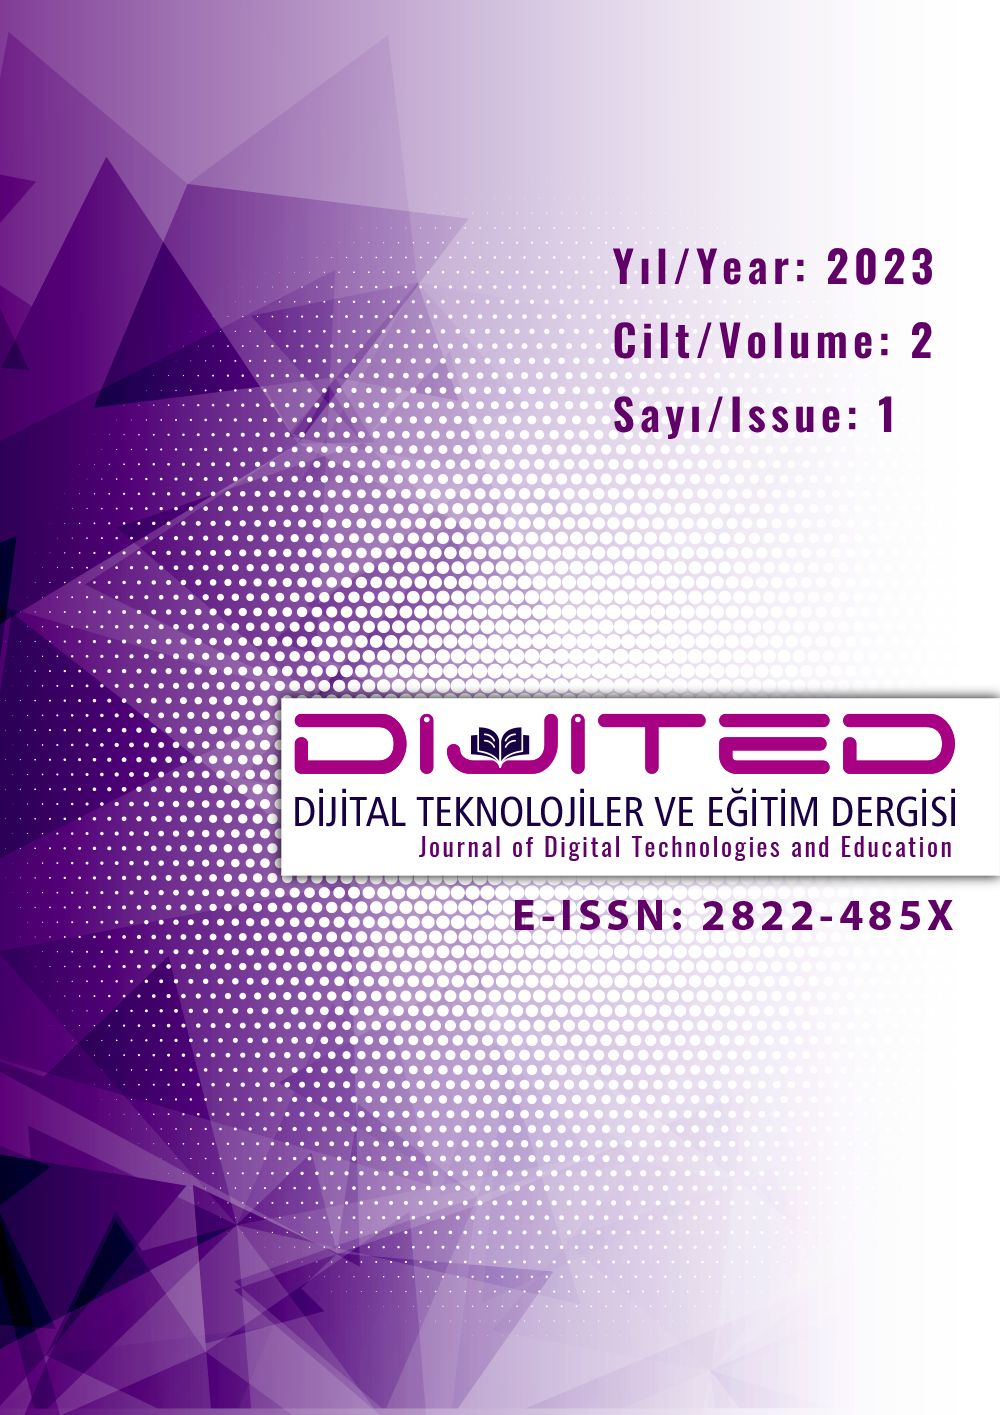 					Cilt 2 Sayı 1 (2023): Dijital Teknolojiler ve Eğitim Dergisi Gör
				